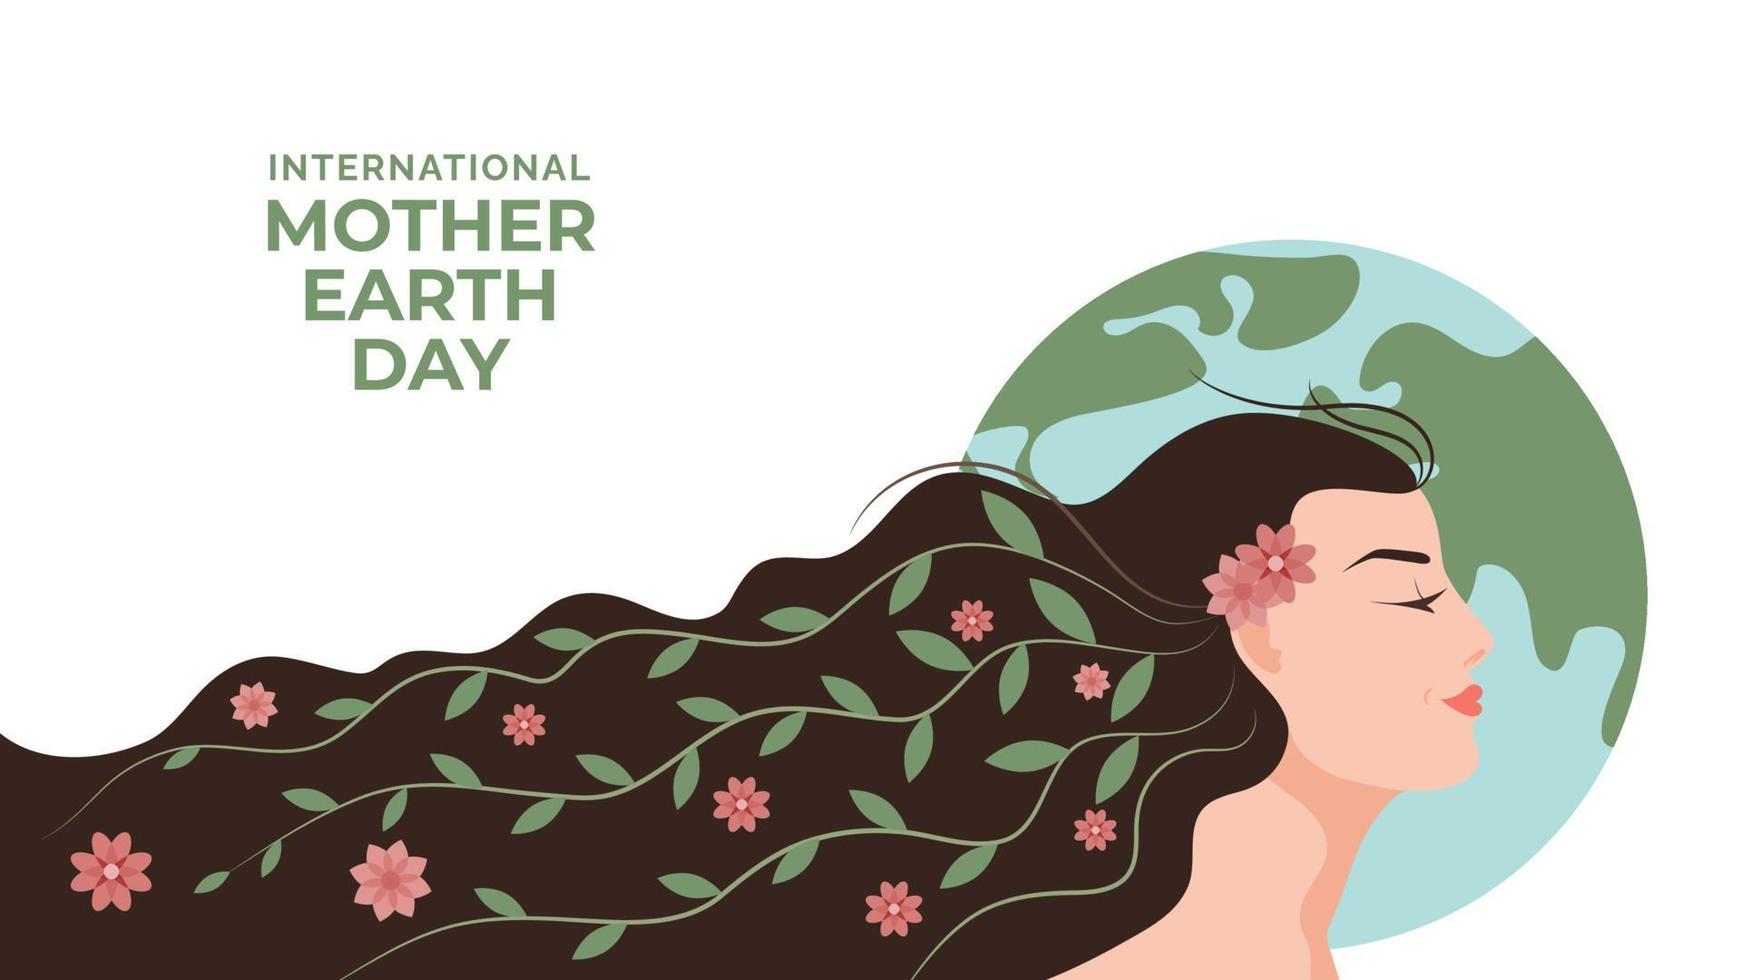 22 de abril - ilustração internacional do dia da mãe terra. mulher dos desenhos animados com flores e folhas no fundo do mapa da terra. salve o design plano de vetor de terra.